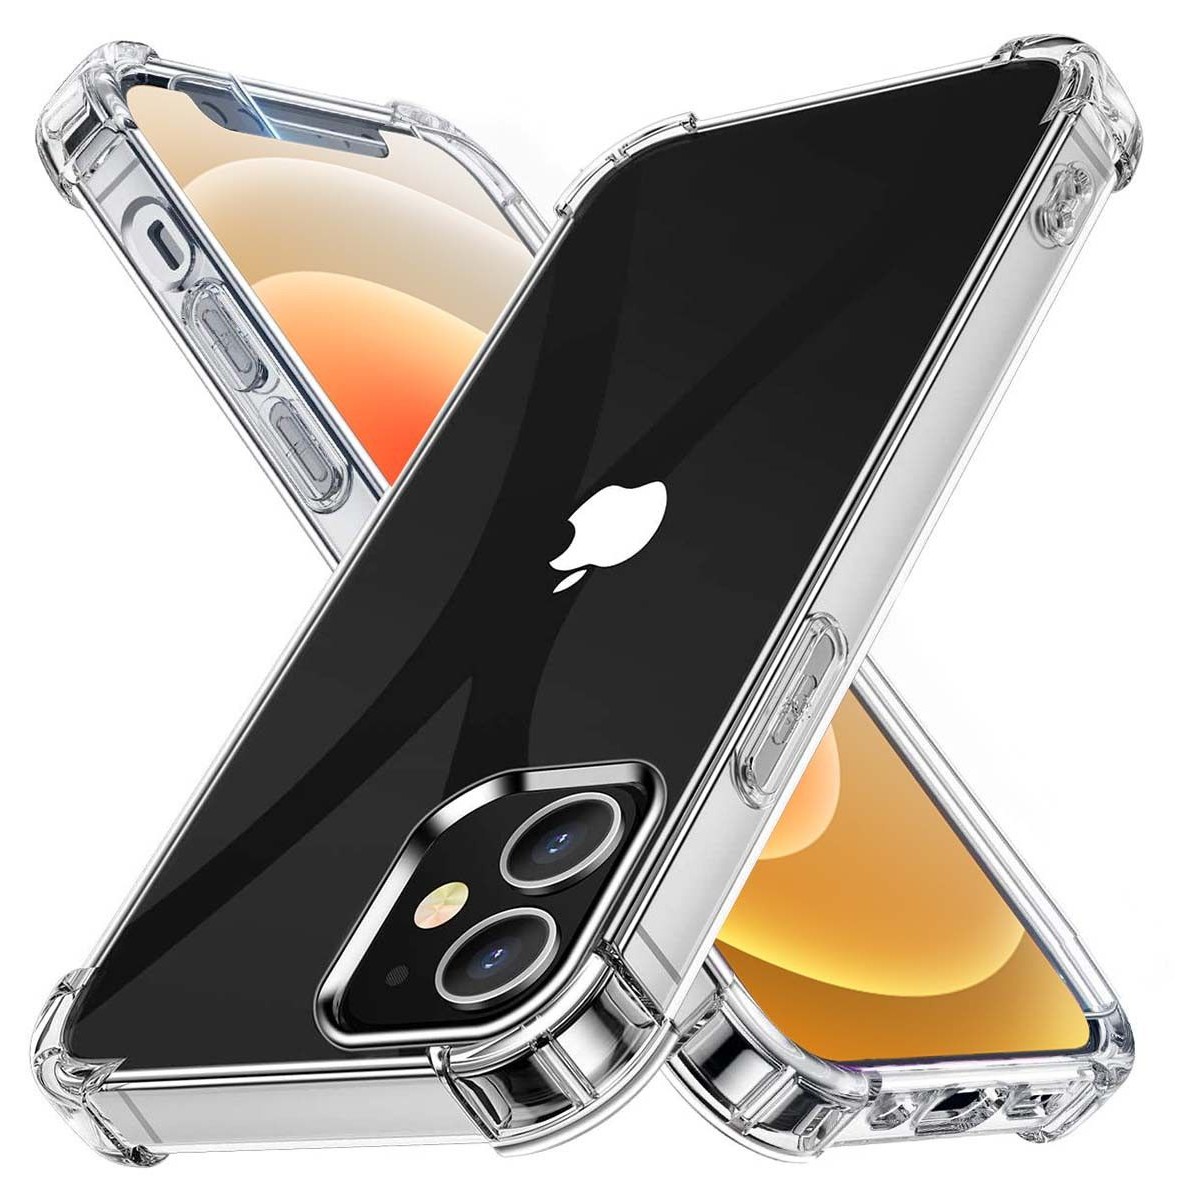 Funda Gel Tpu Anti-Shock Transparente para Iphone 12 / 12 Pro (6.1)